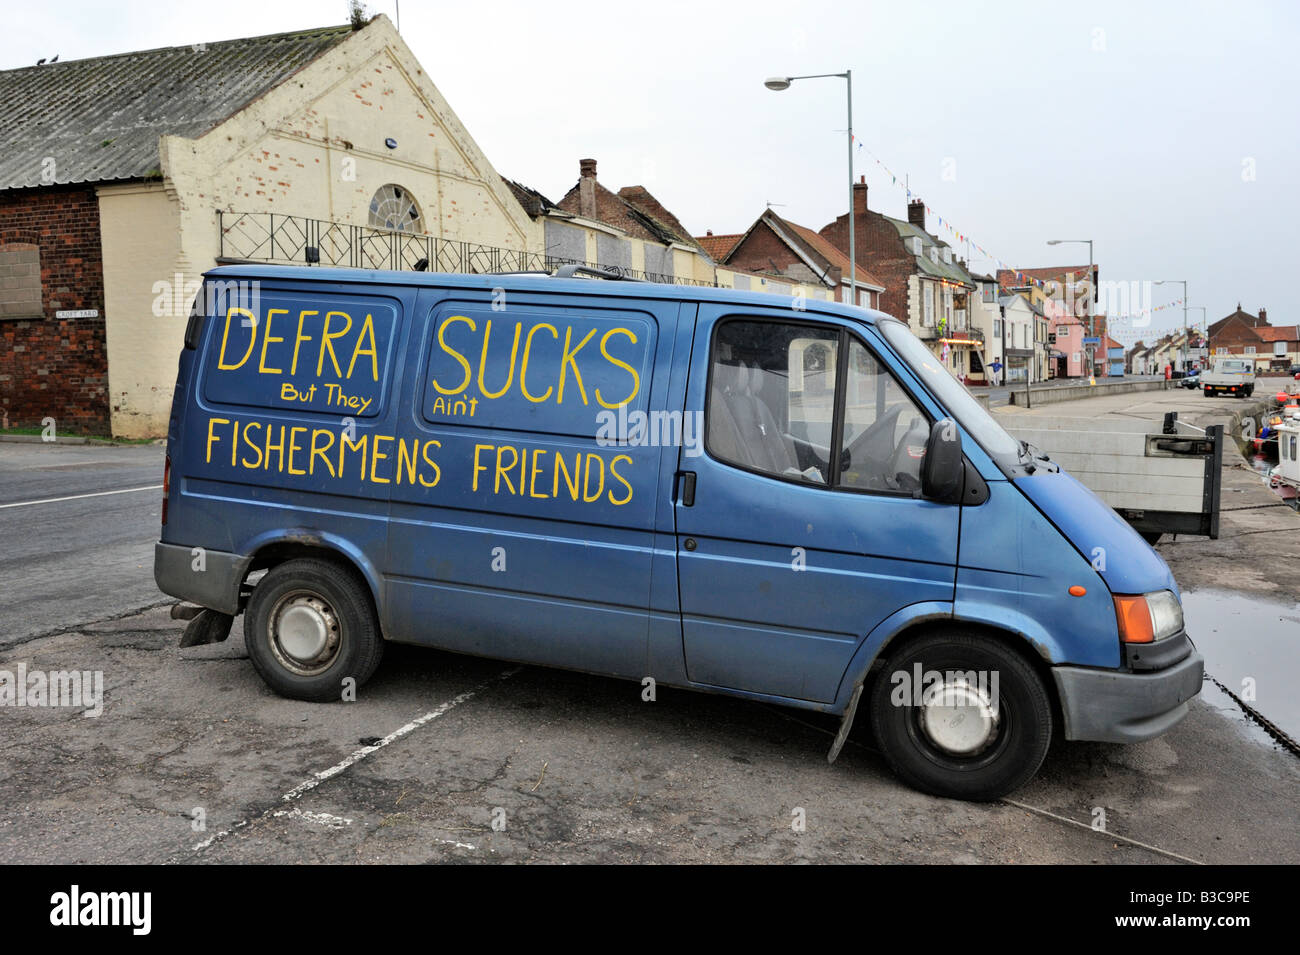 Commentaire de pêcheurs sur la pêche, la politique du gouvernement britannique sur le côté du van portuaires à Wells-Next-the-Sea, Norfolk Banque D'Images